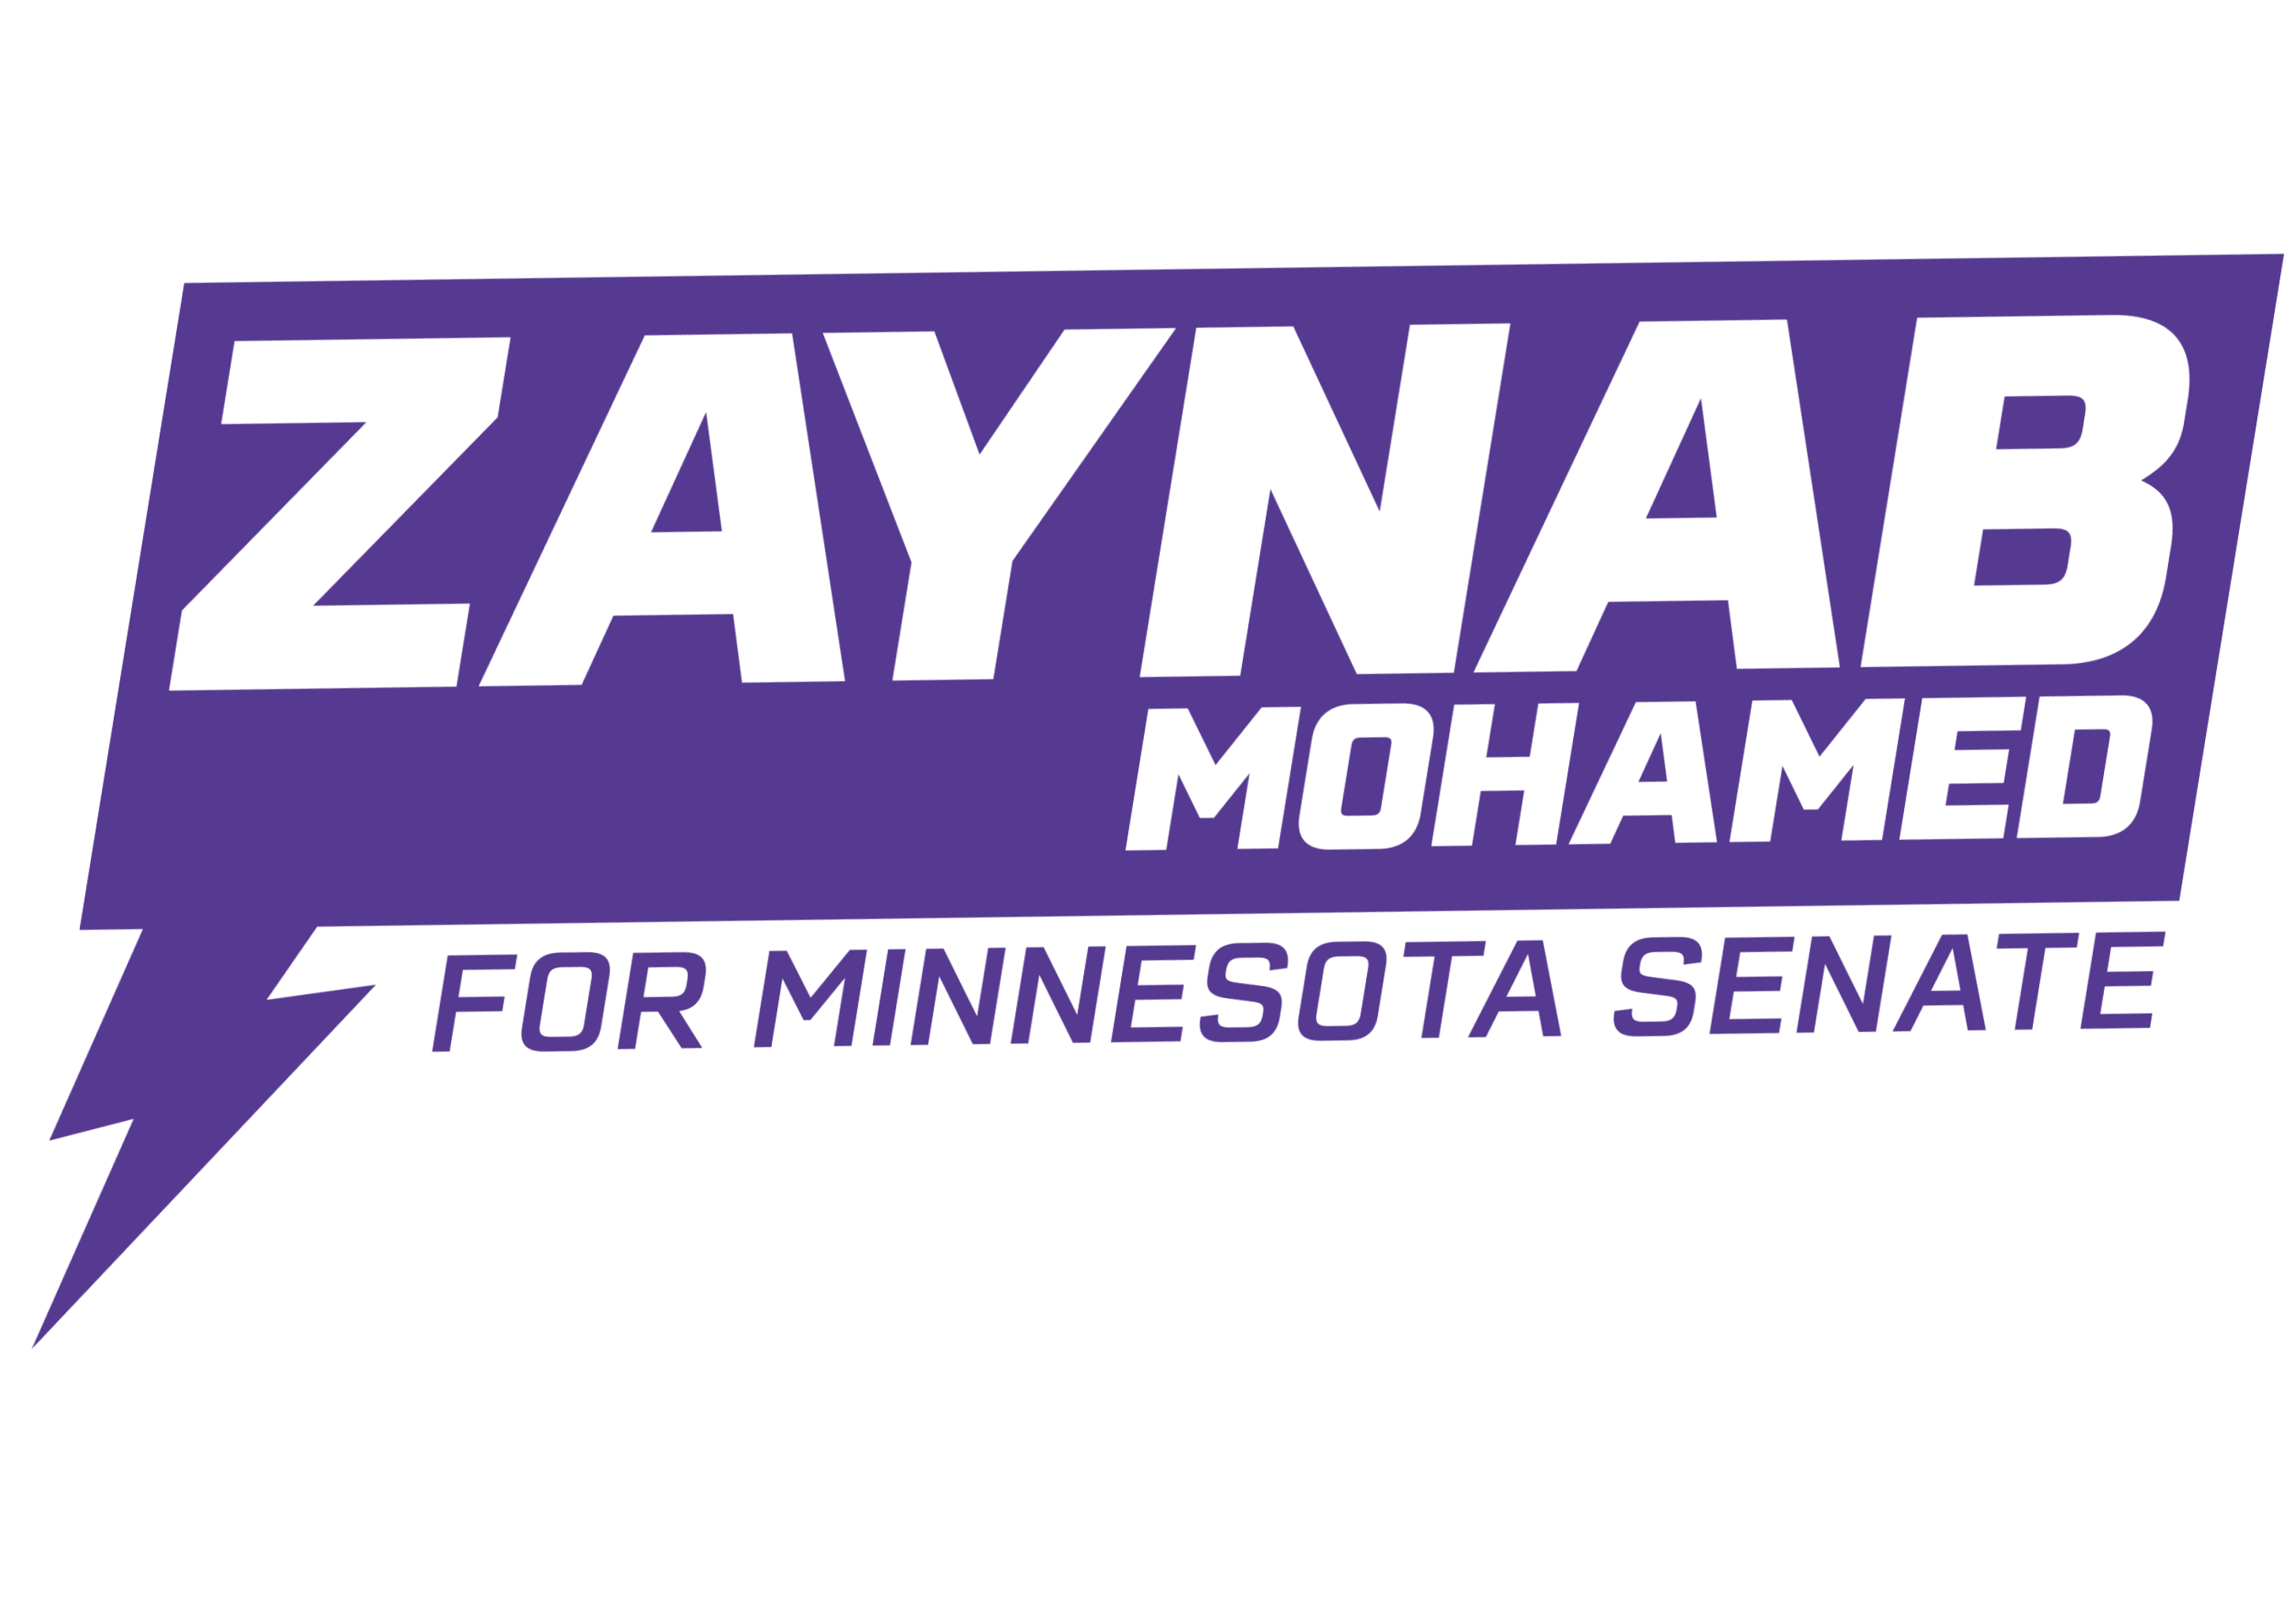 Zaynab Mohamed for Minnesota Senate